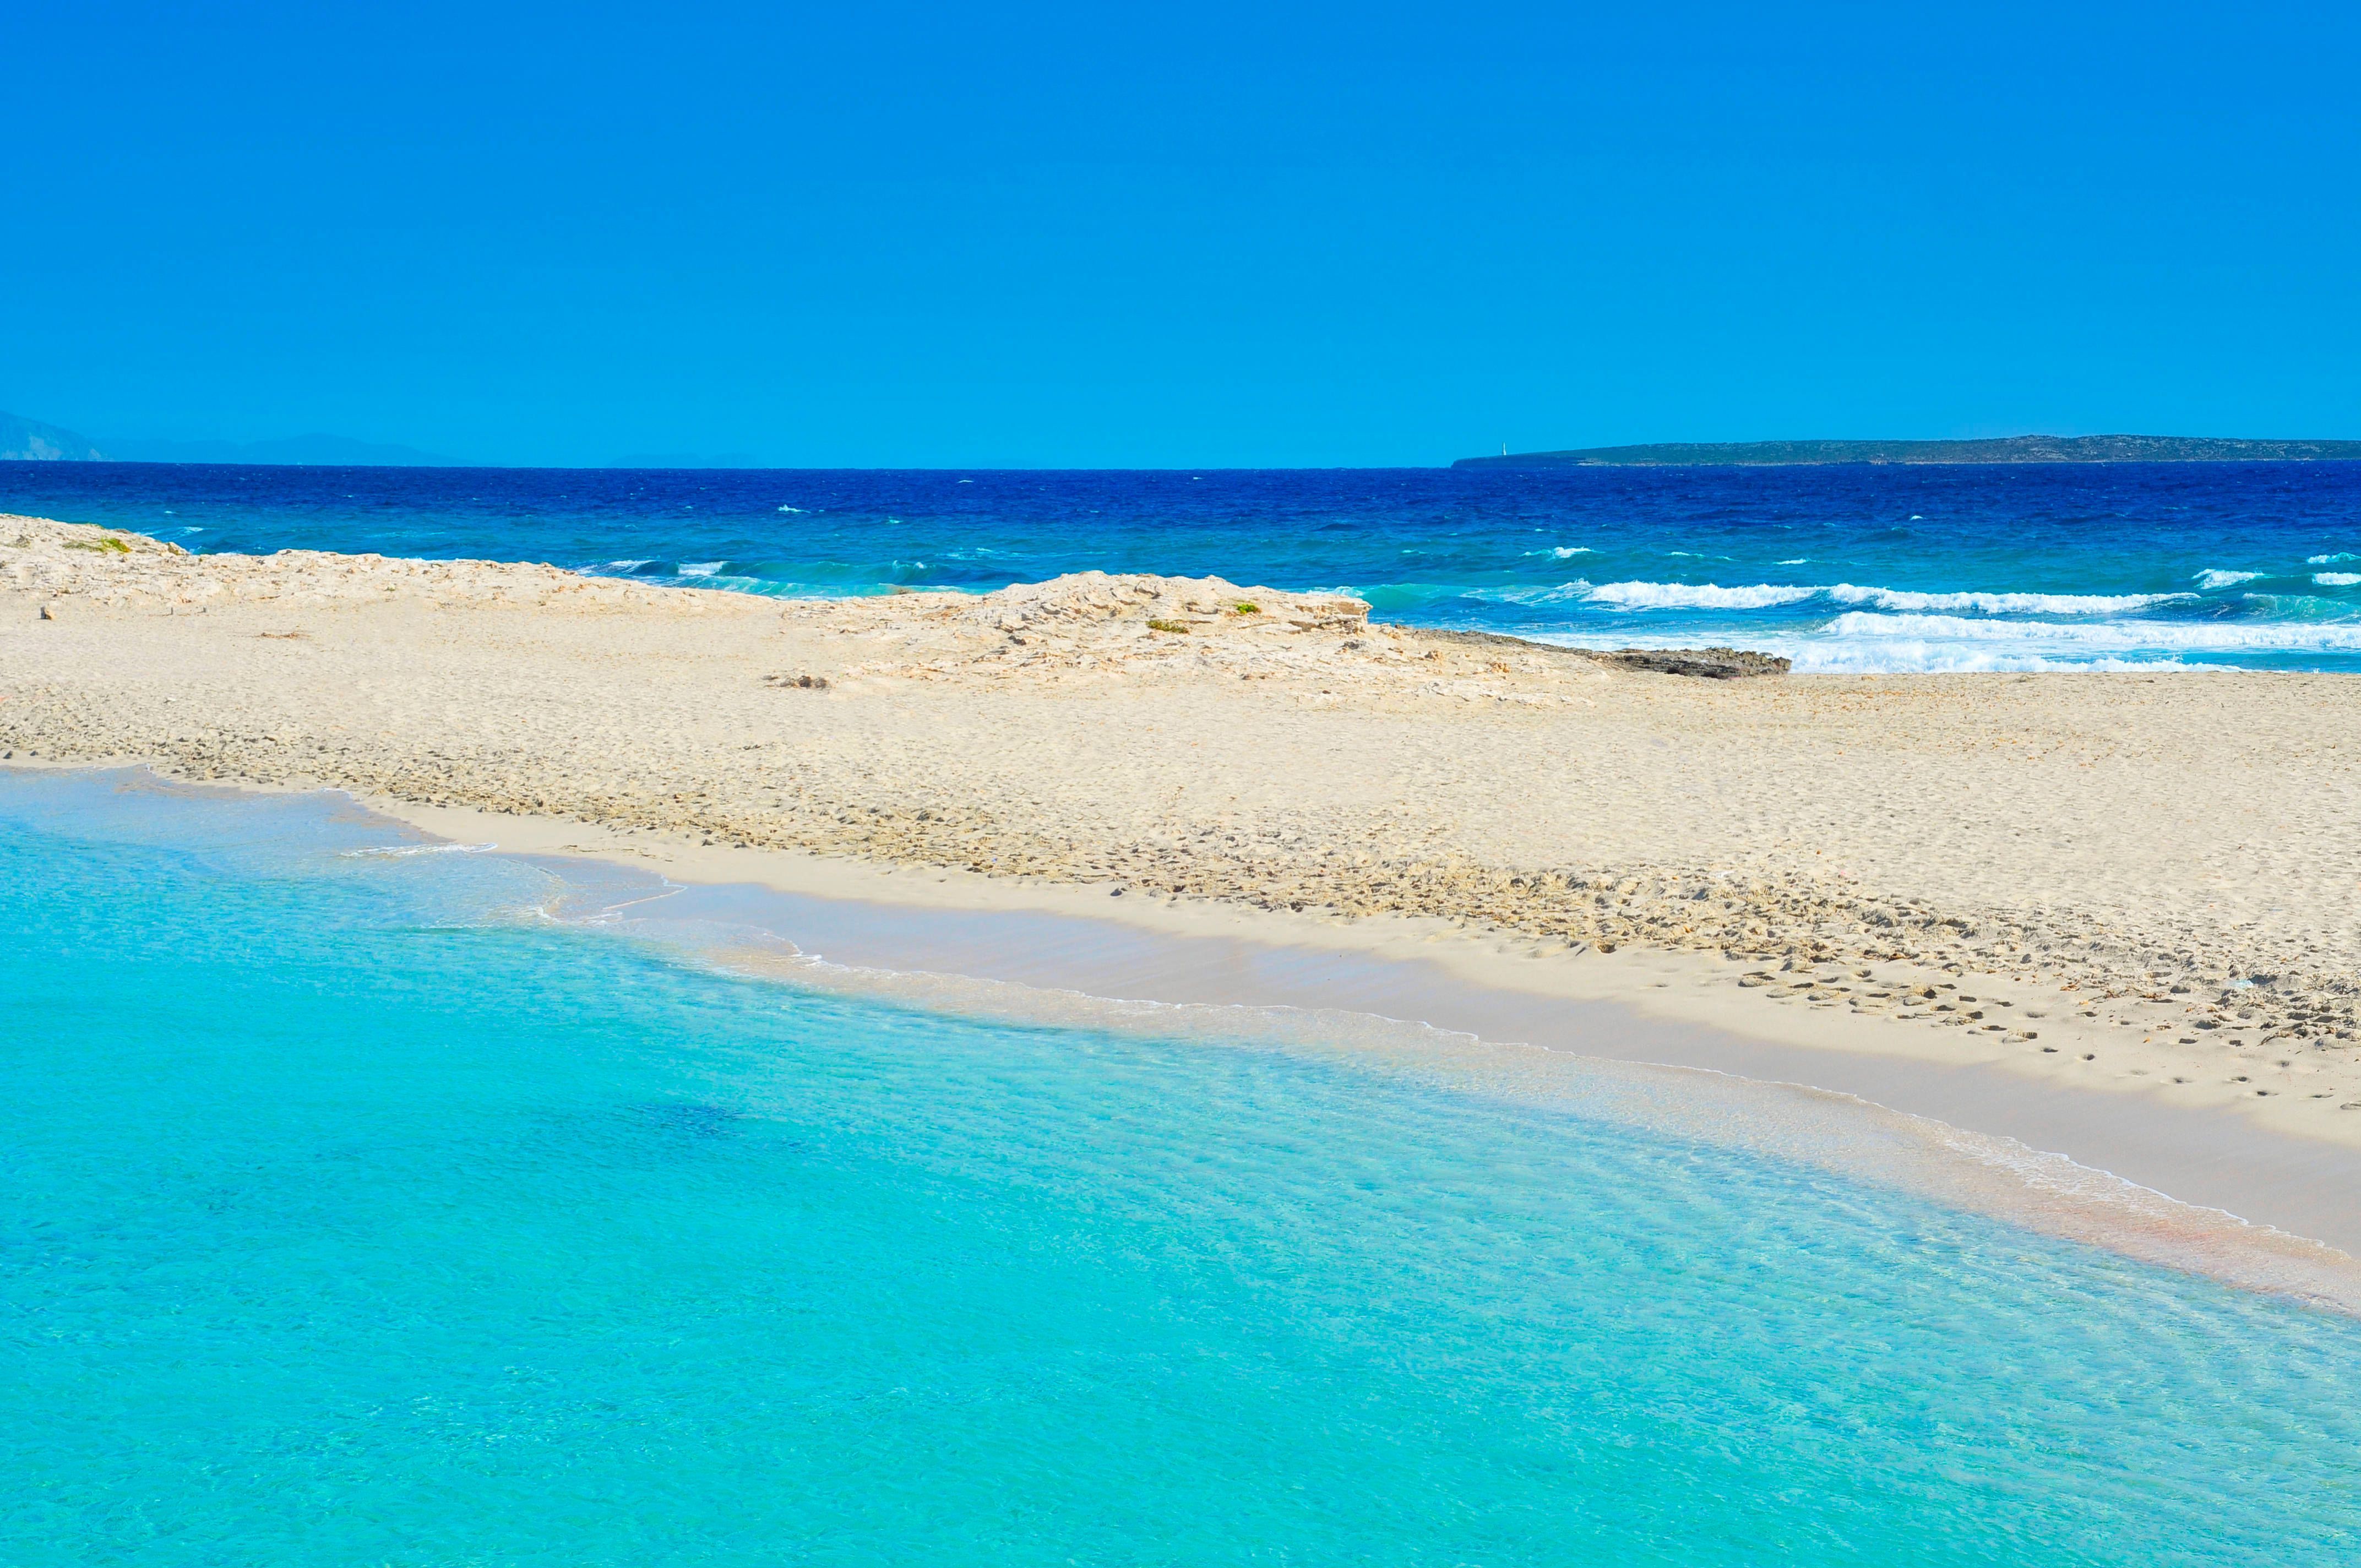 Der Strand Ses Illetes auf Formentera bietet wunderschöne Sandbänke inmitten von türkisblauem Meer.